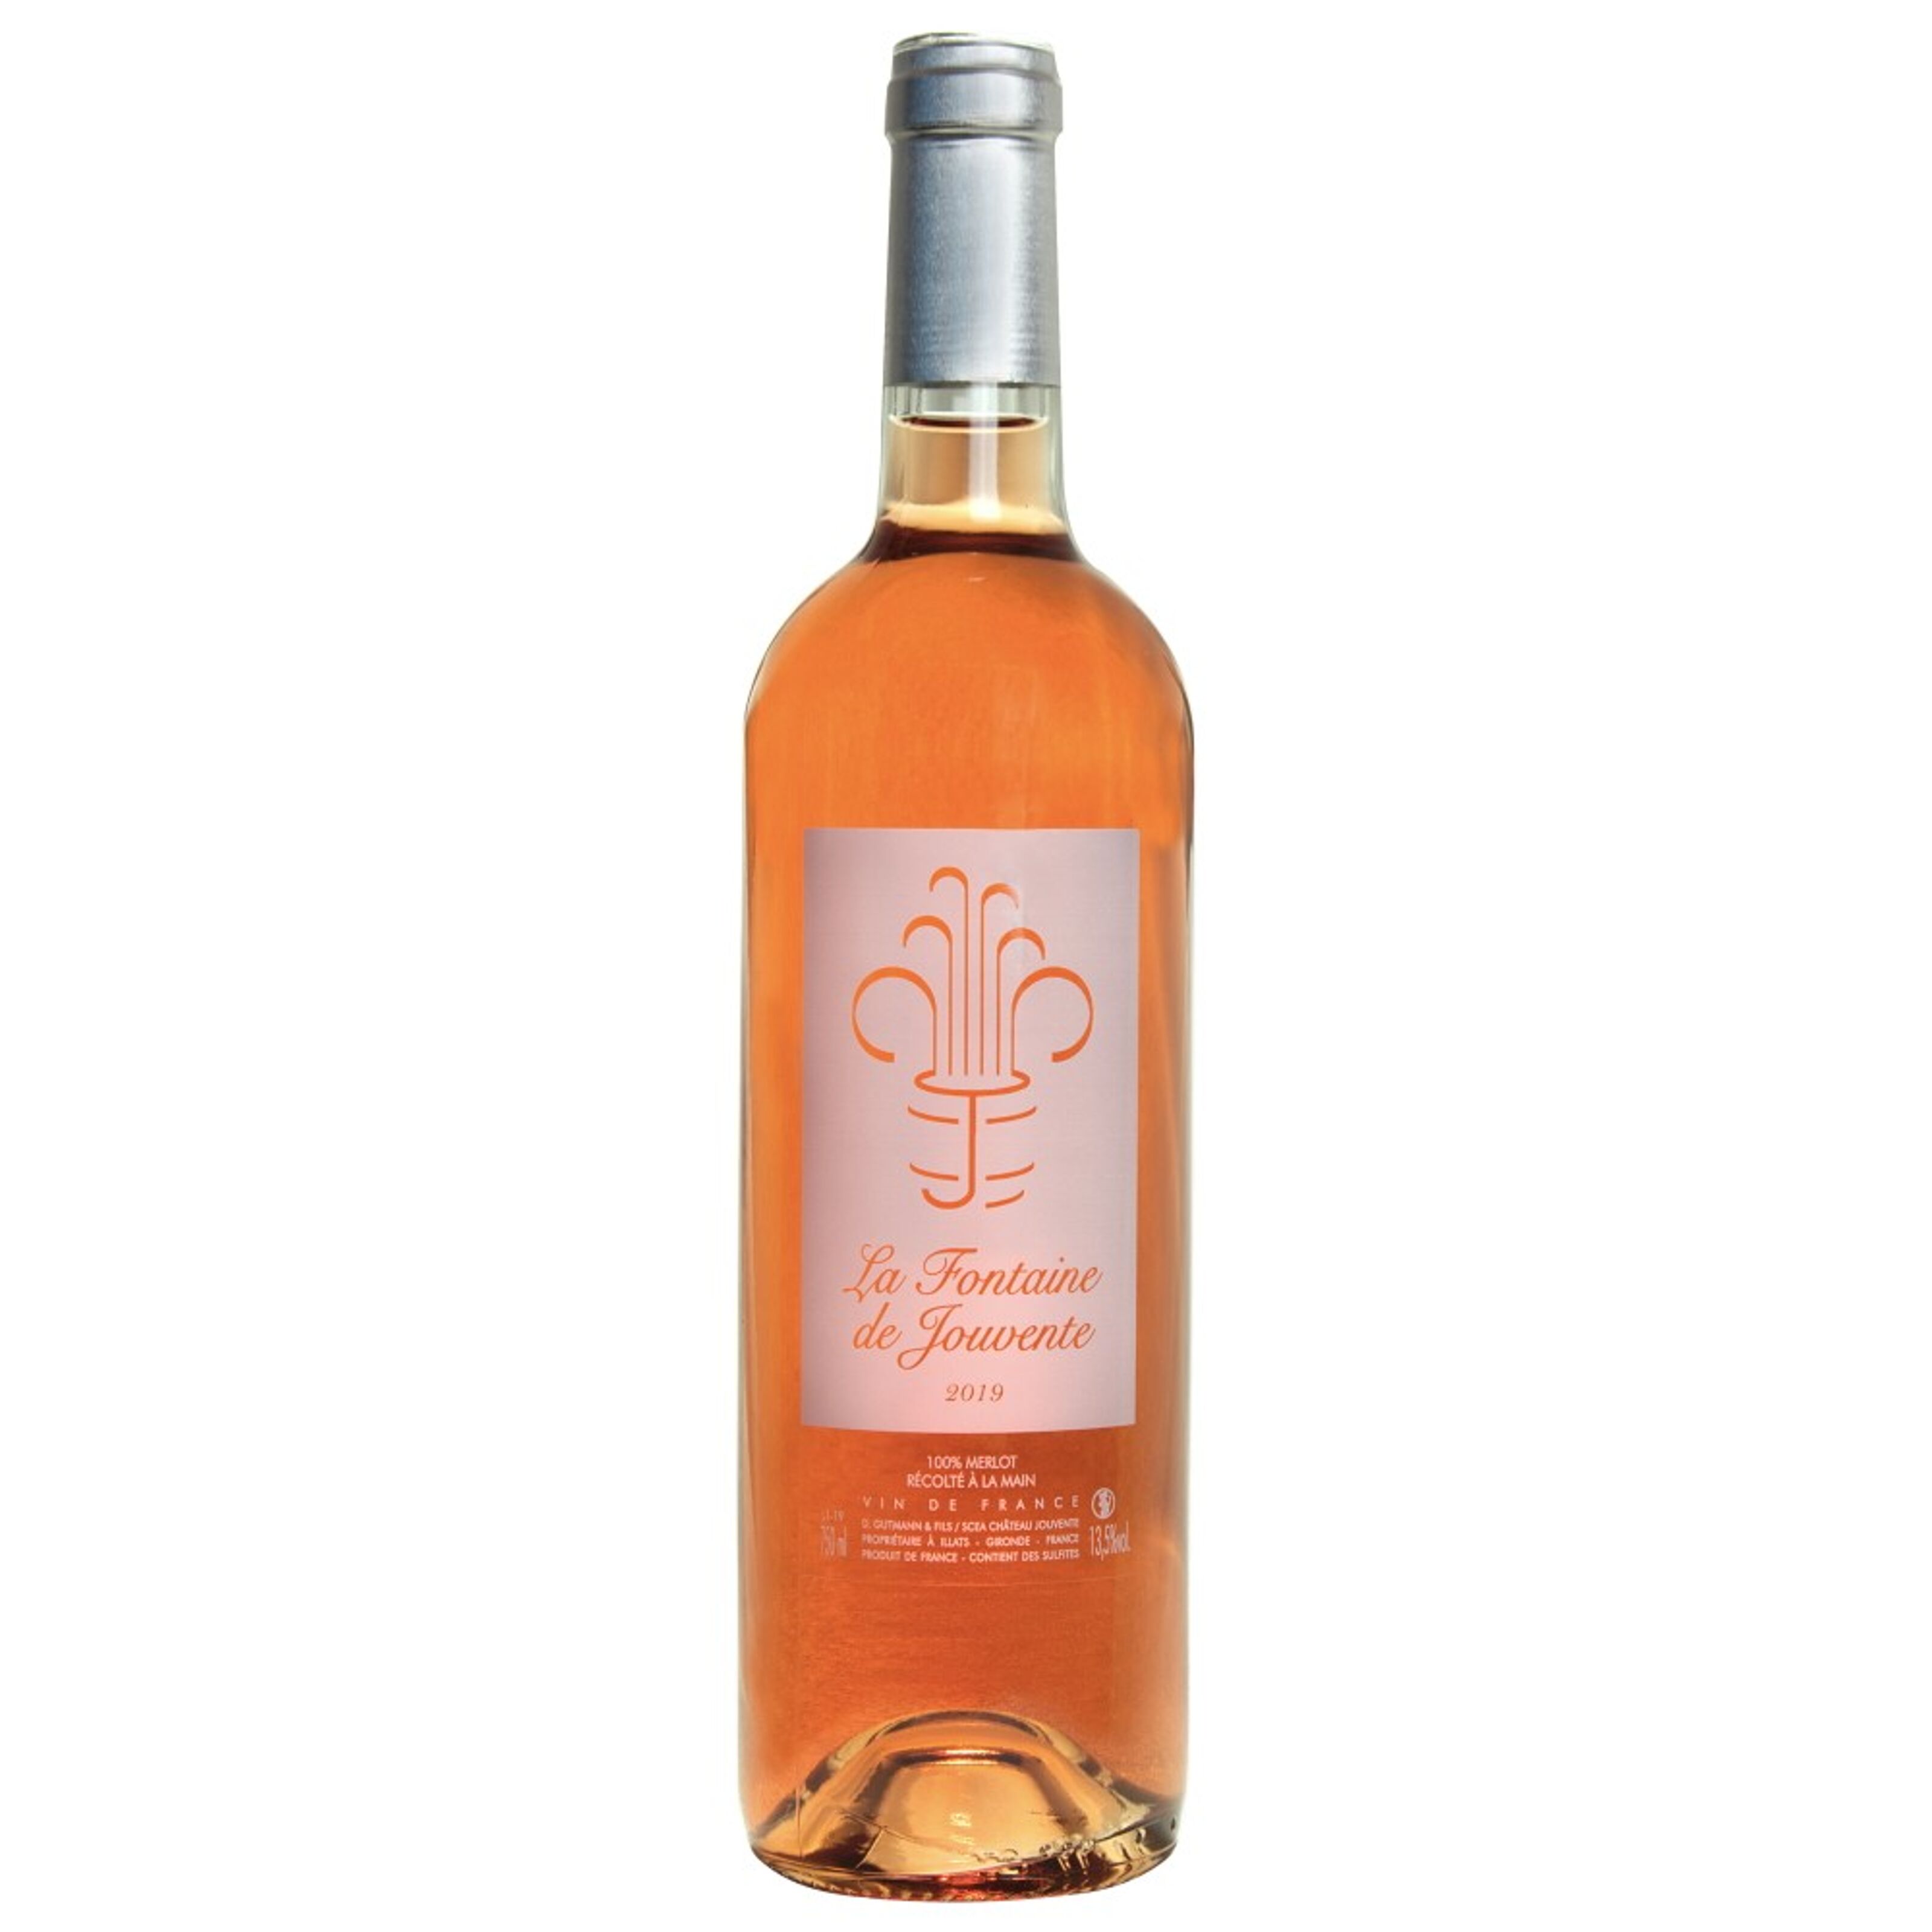 Buy wholesale 2019 of France, Fontaine de Wine La Jouvente Rosé